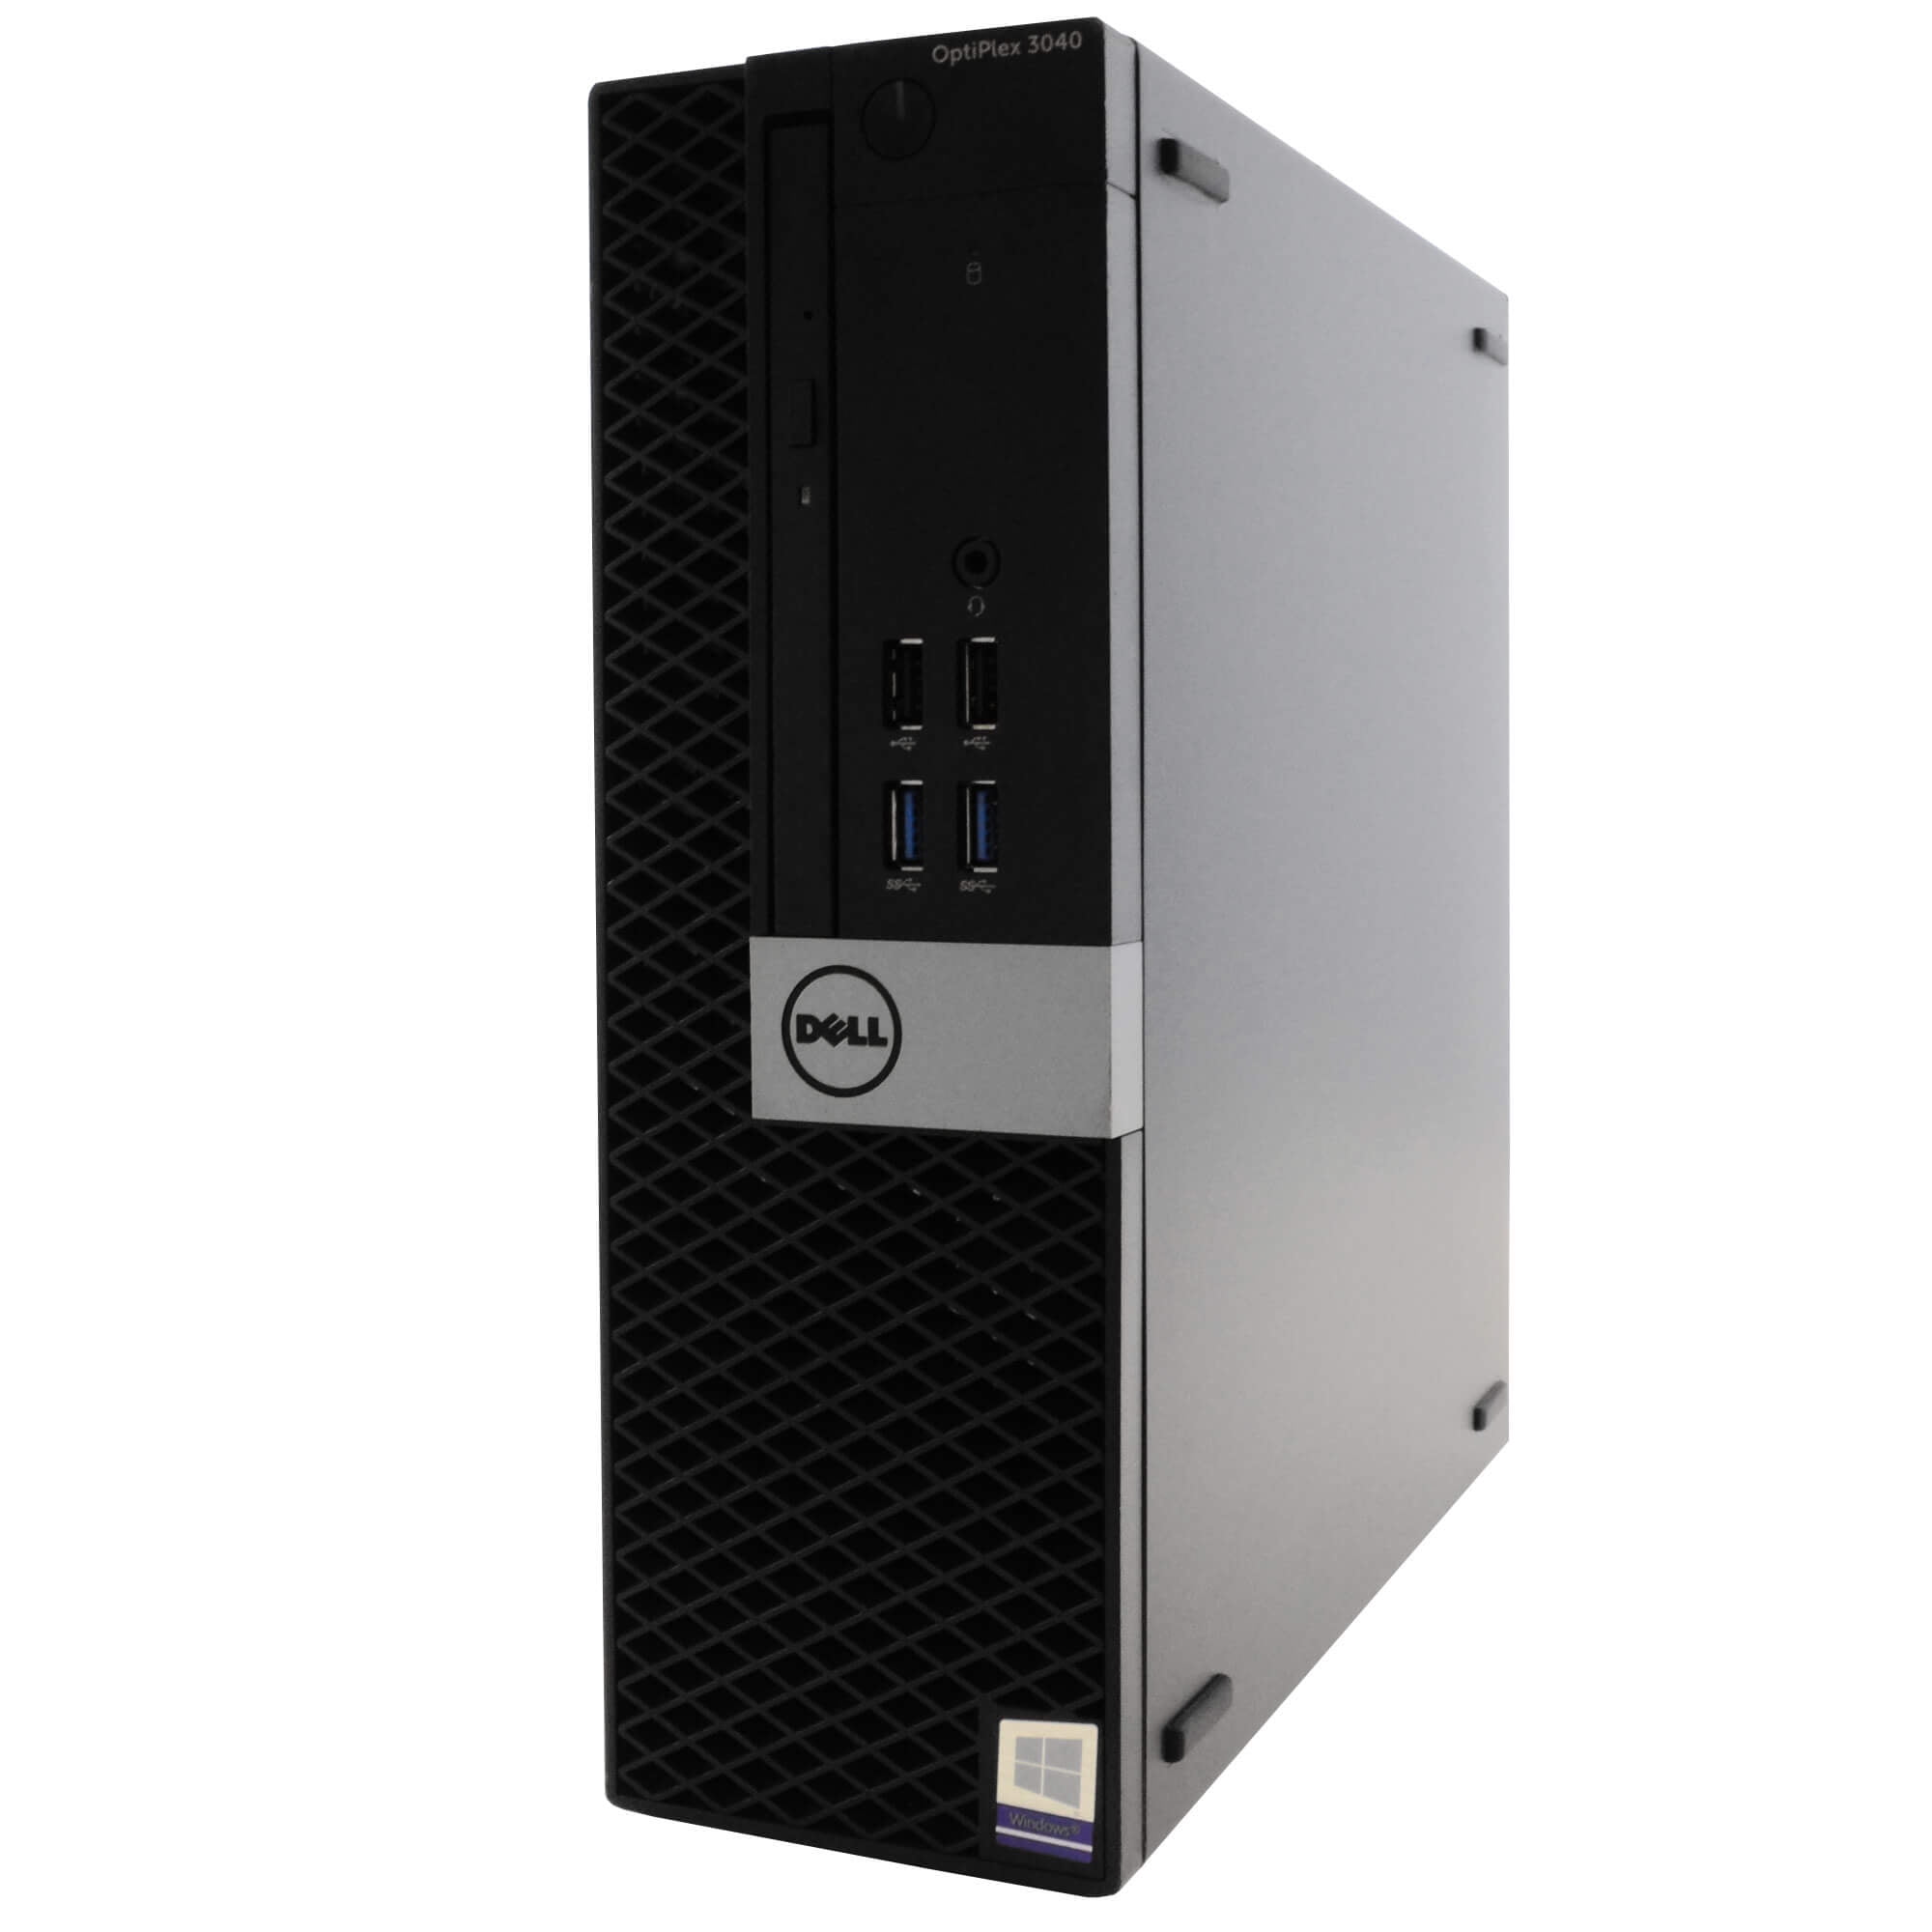 PC Fixe Complet Dell OPTIPLEX 3040MT Intel i5